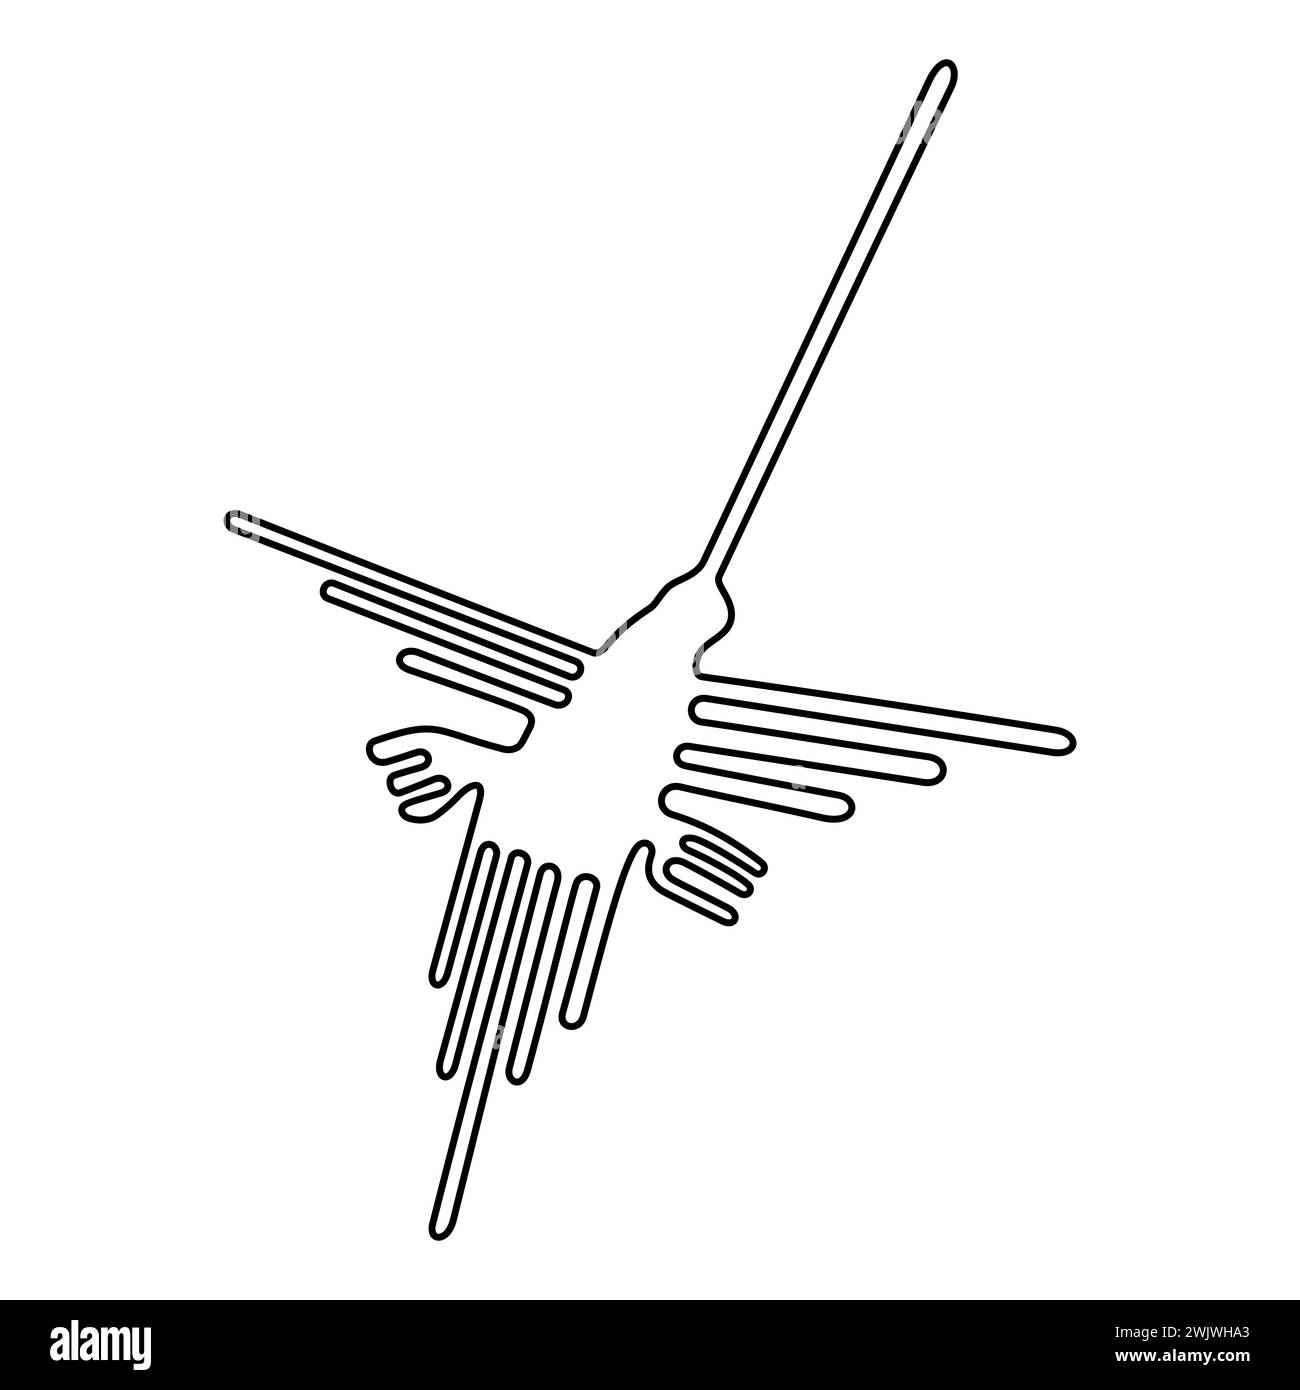 Motivo Hummingbird, linee di Nazca nel deserto del Perù meridionale. Simbolo di uccello costituito da un'unica linea continua. Geoglifo che può essere visto solo dall'aria. Foto Stock